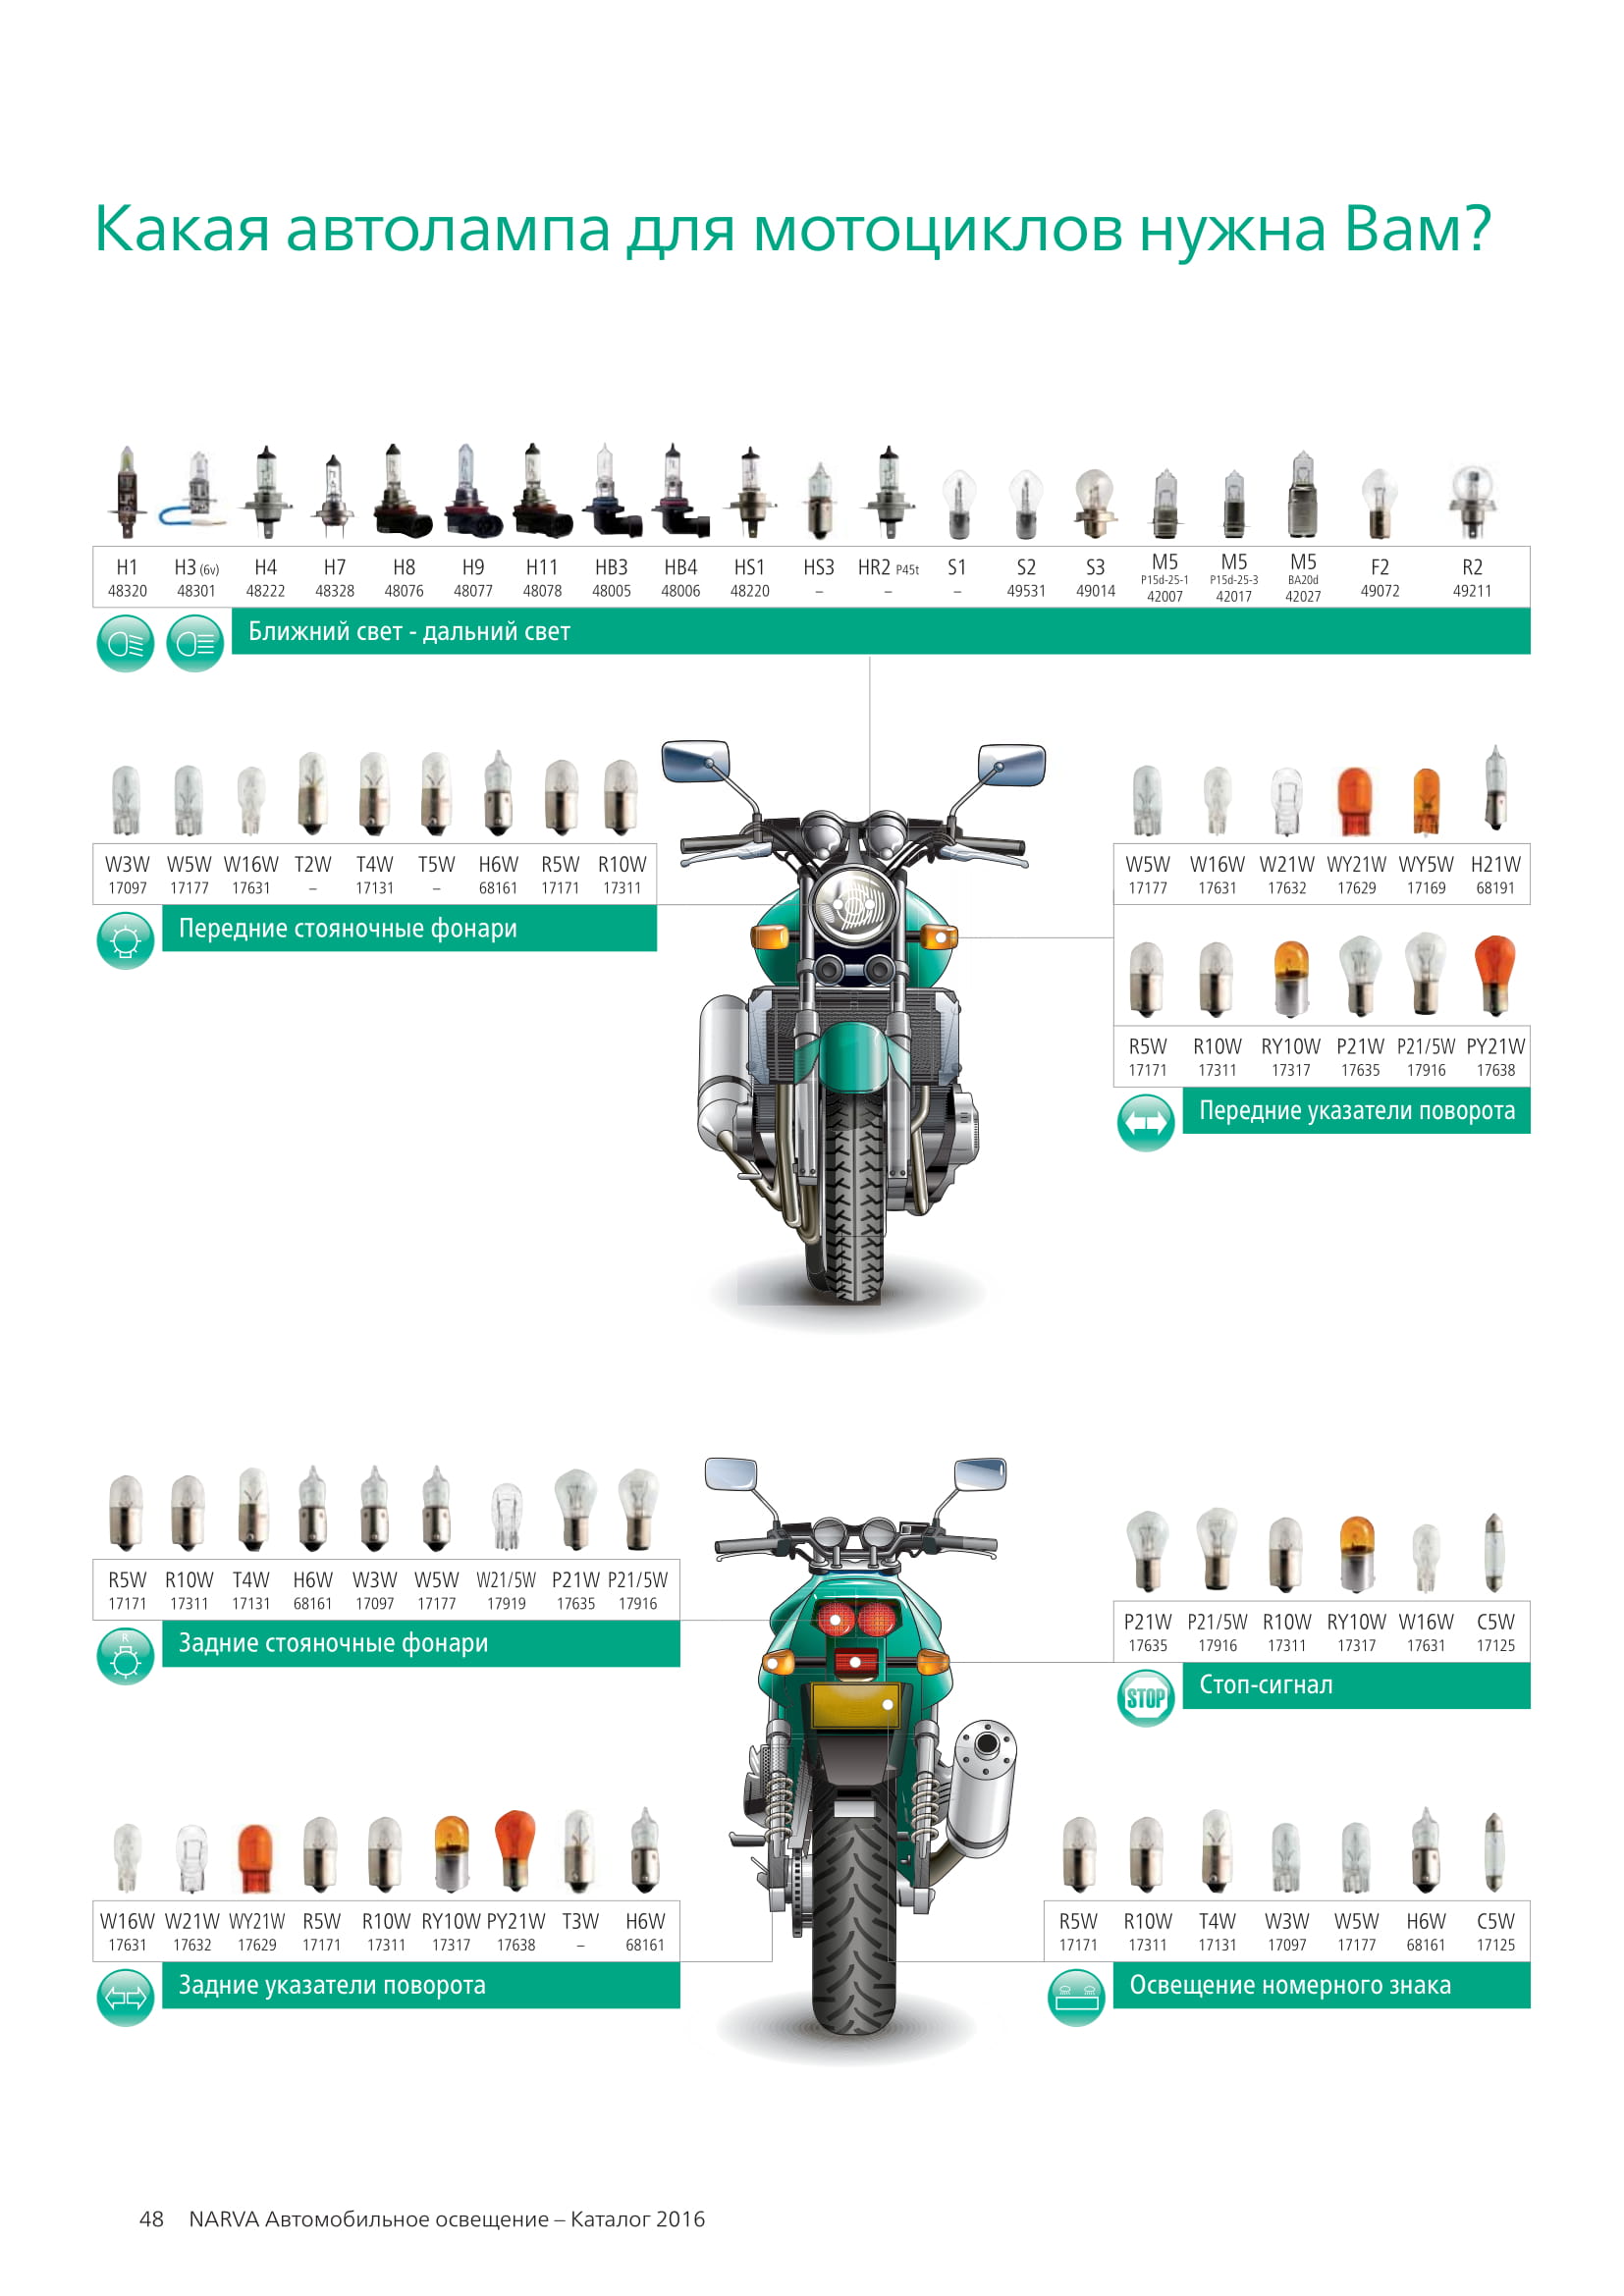 Какая лампа для мотоцикла нужна Вам?